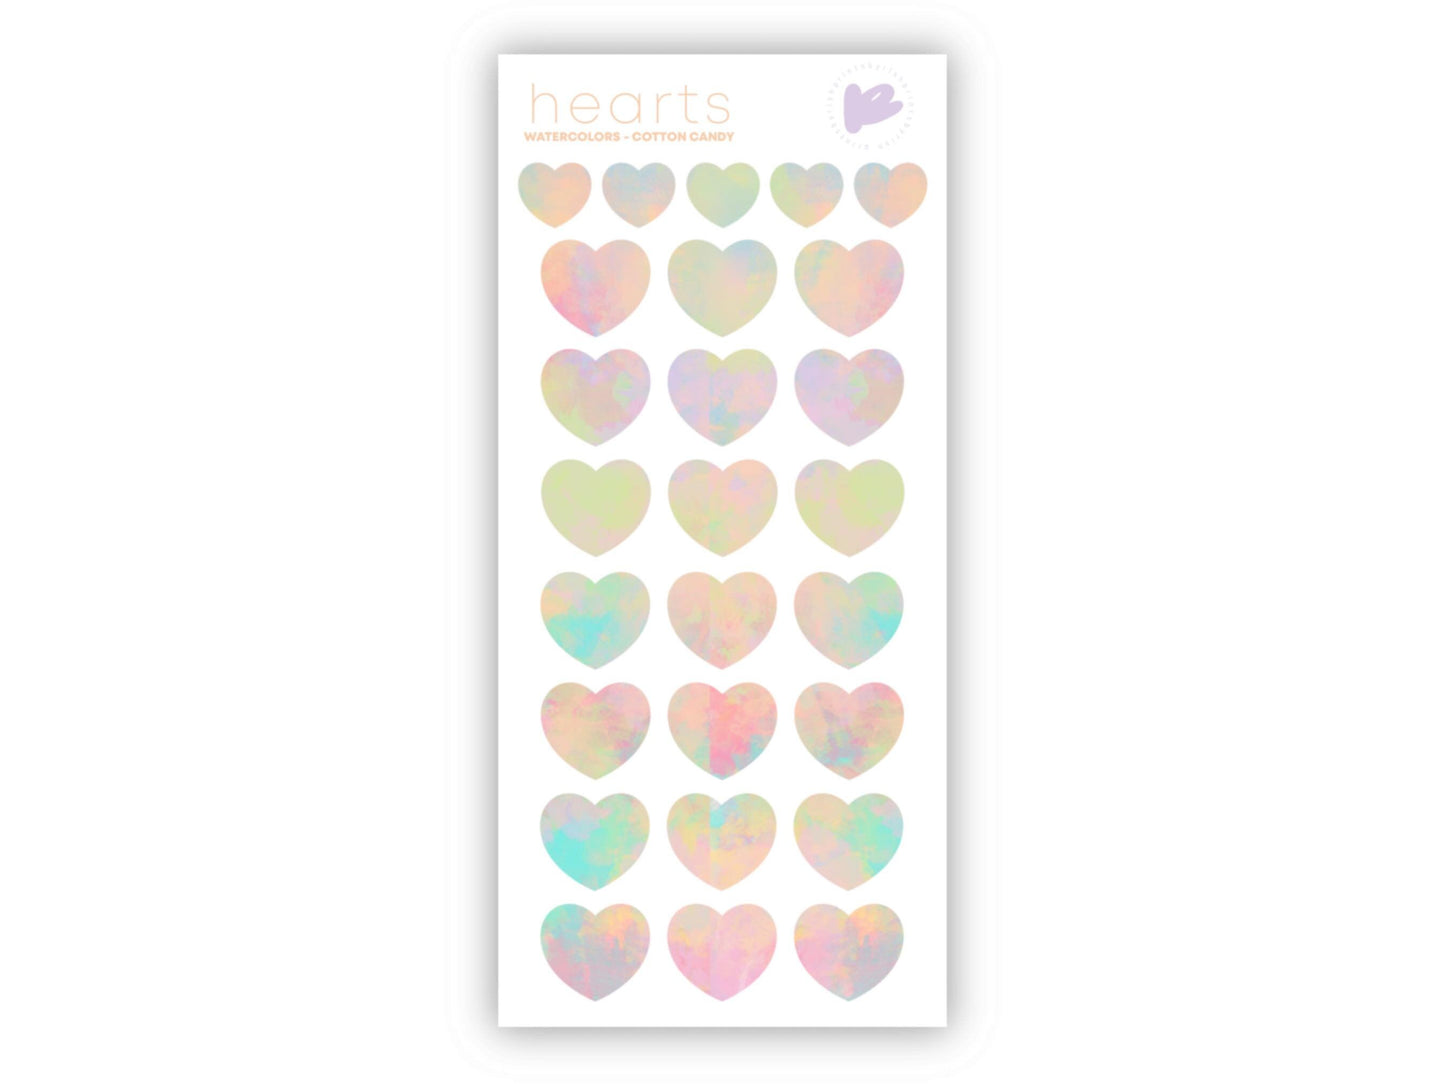 Watercolors Hearts Sticker Sheet